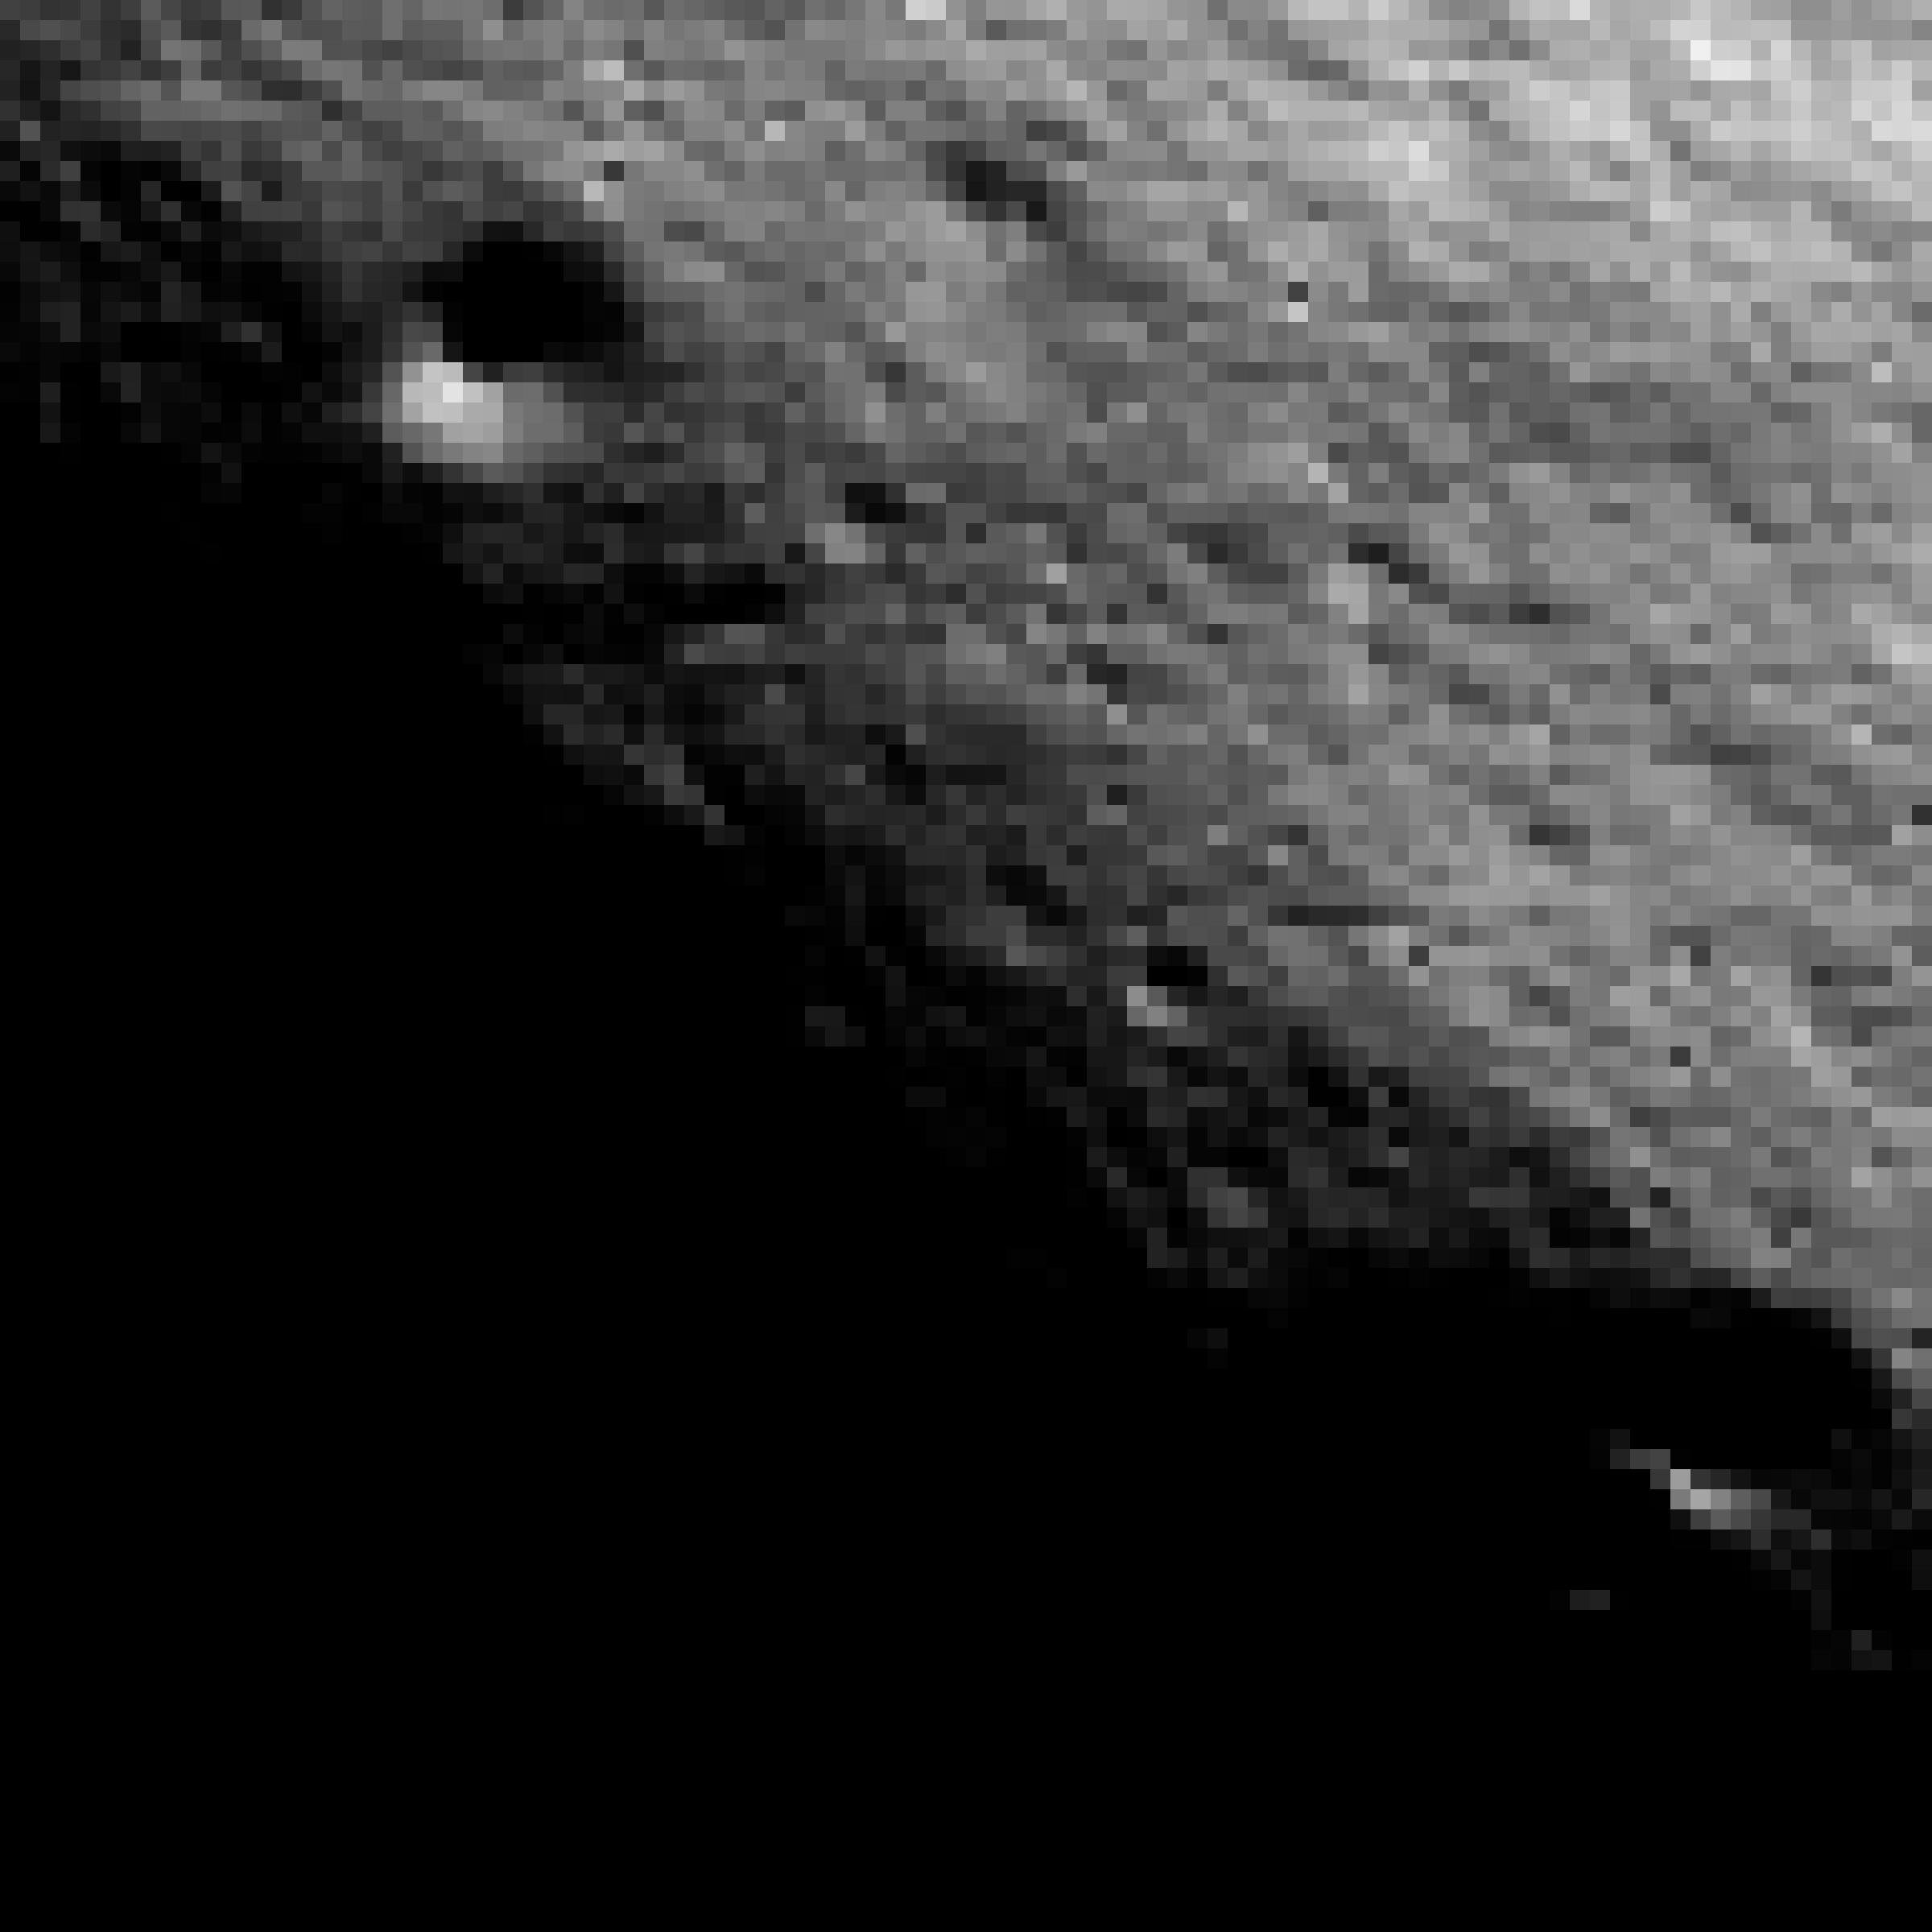 Der Krater Malapert Mountain in der nahe des Mondsüdpols in gleißendem, flachen Licht